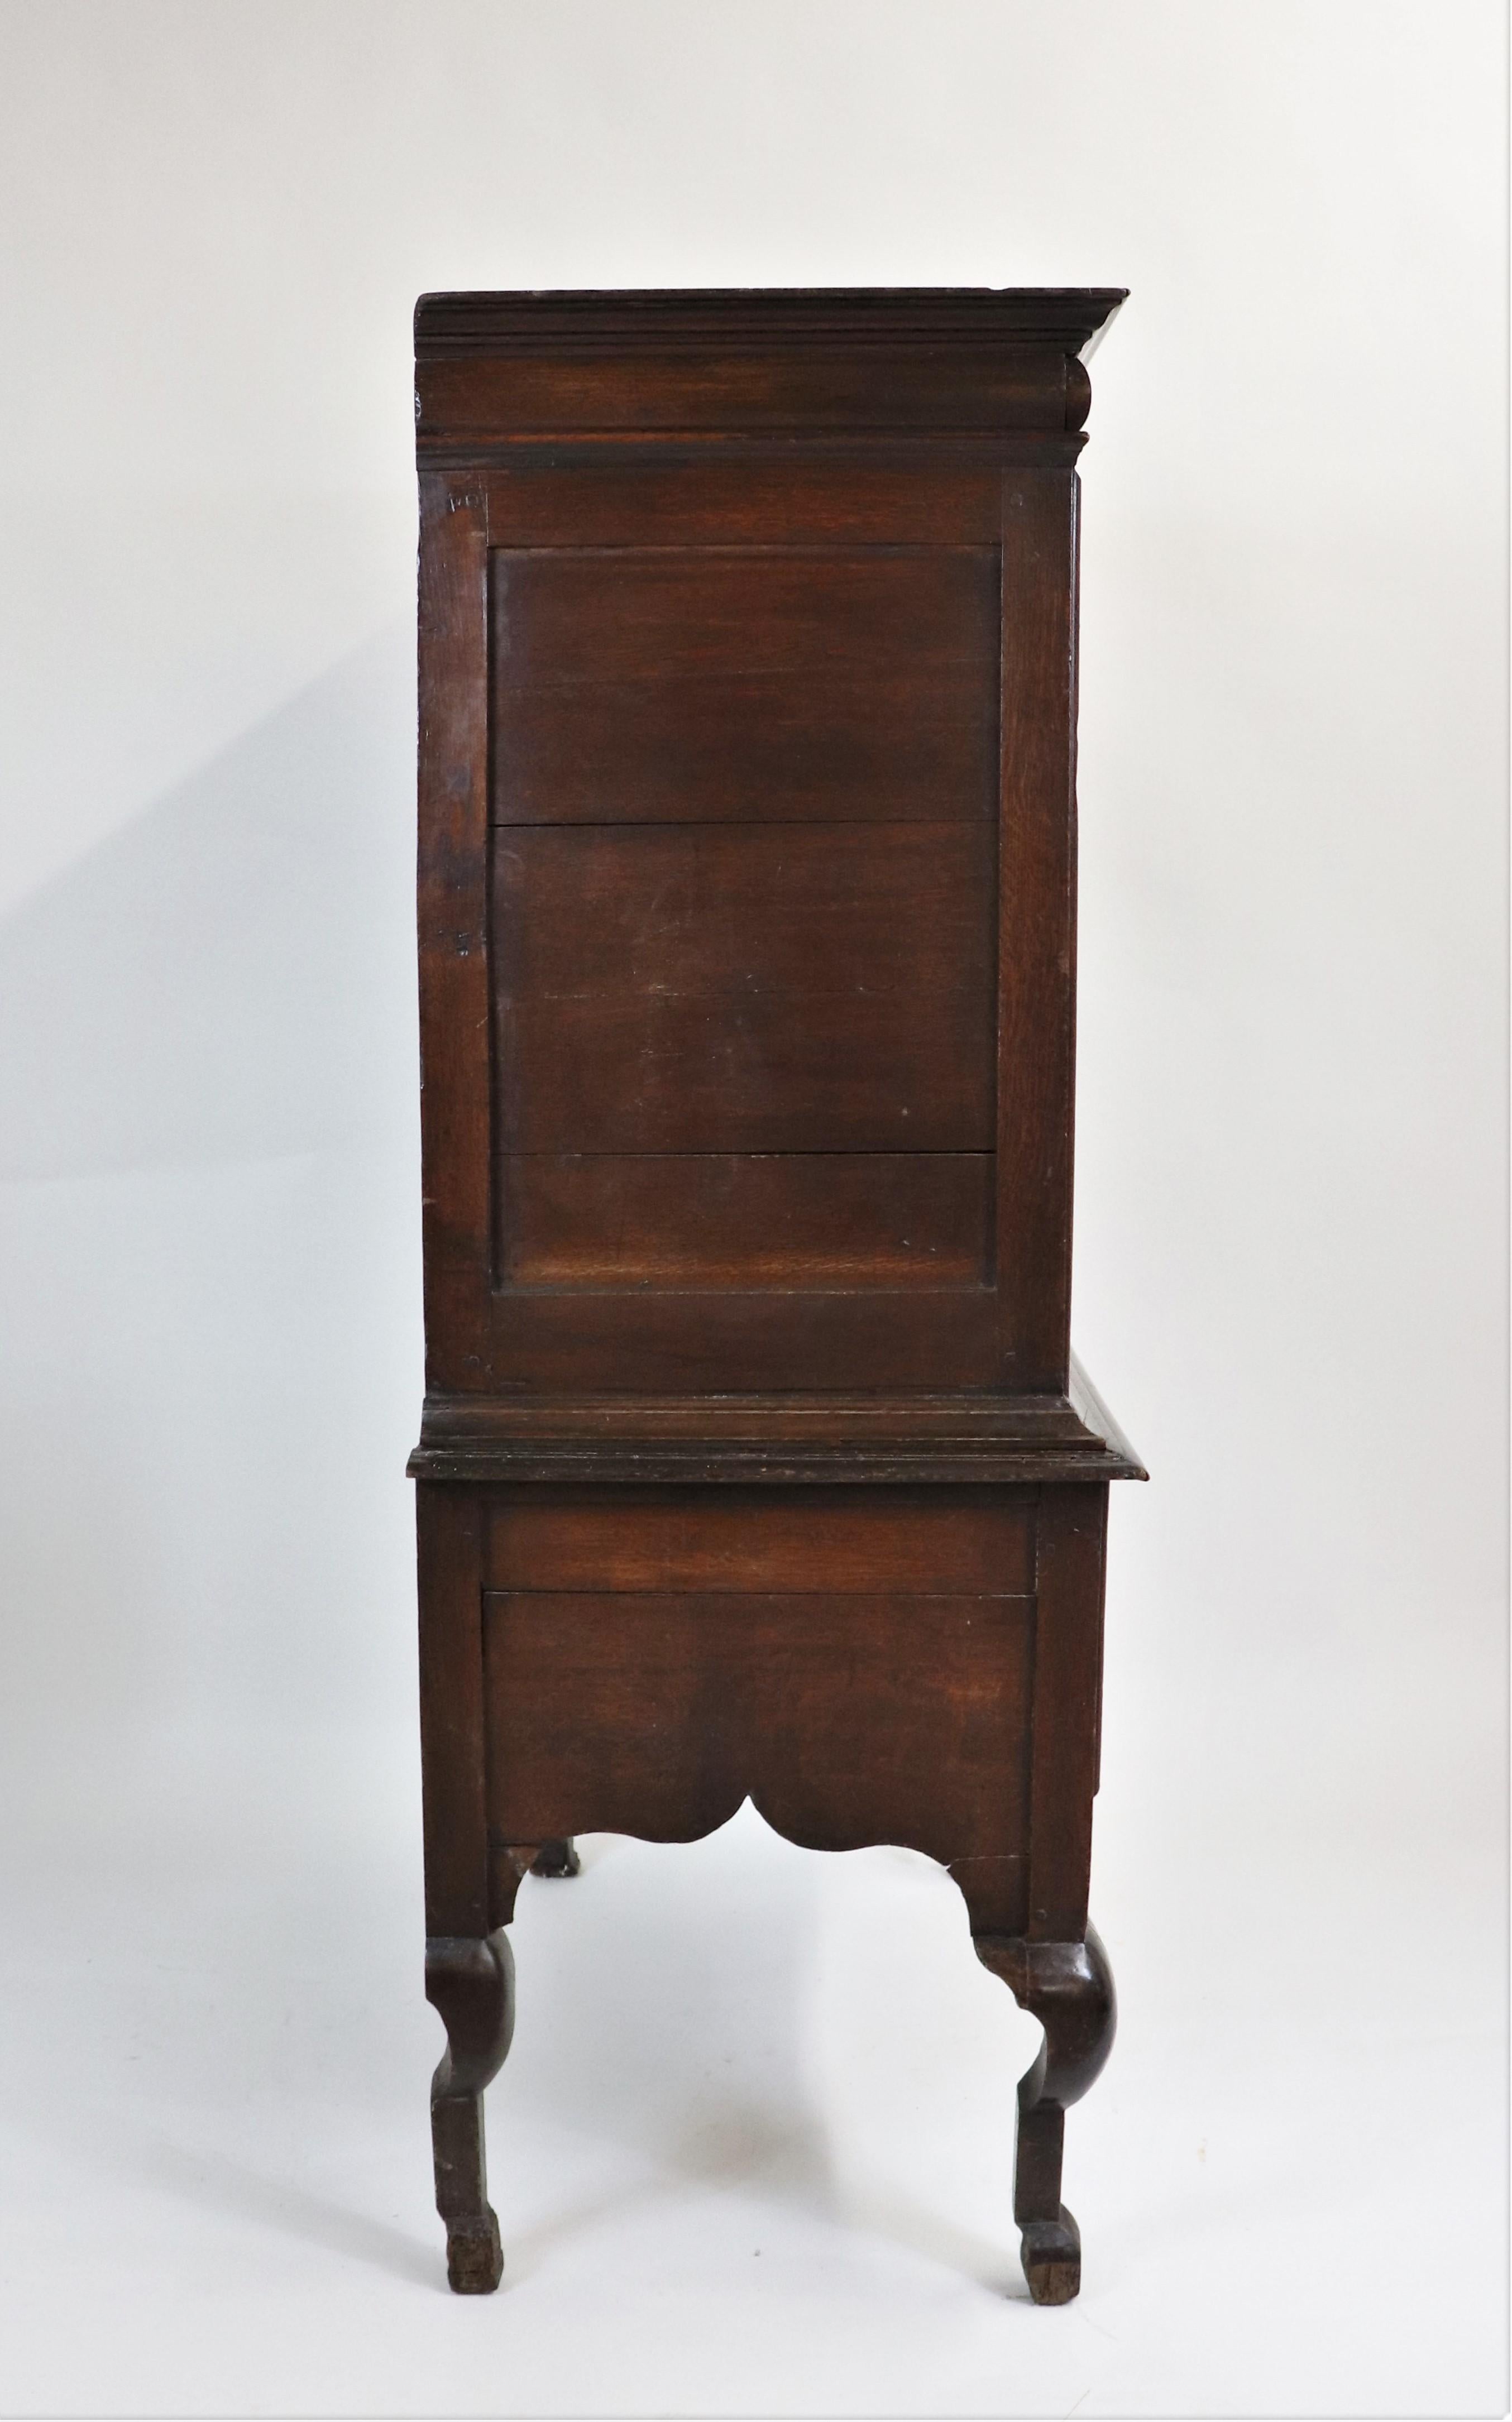 La conception de l'époque Charles II a incorporé une influence française. Les meubles se caractérisaient souvent par des sculptures élégantes, tout en mettant l'accent sur la fiabilité et l'utilité. Cette commode a été entièrement sculptée en chêne.